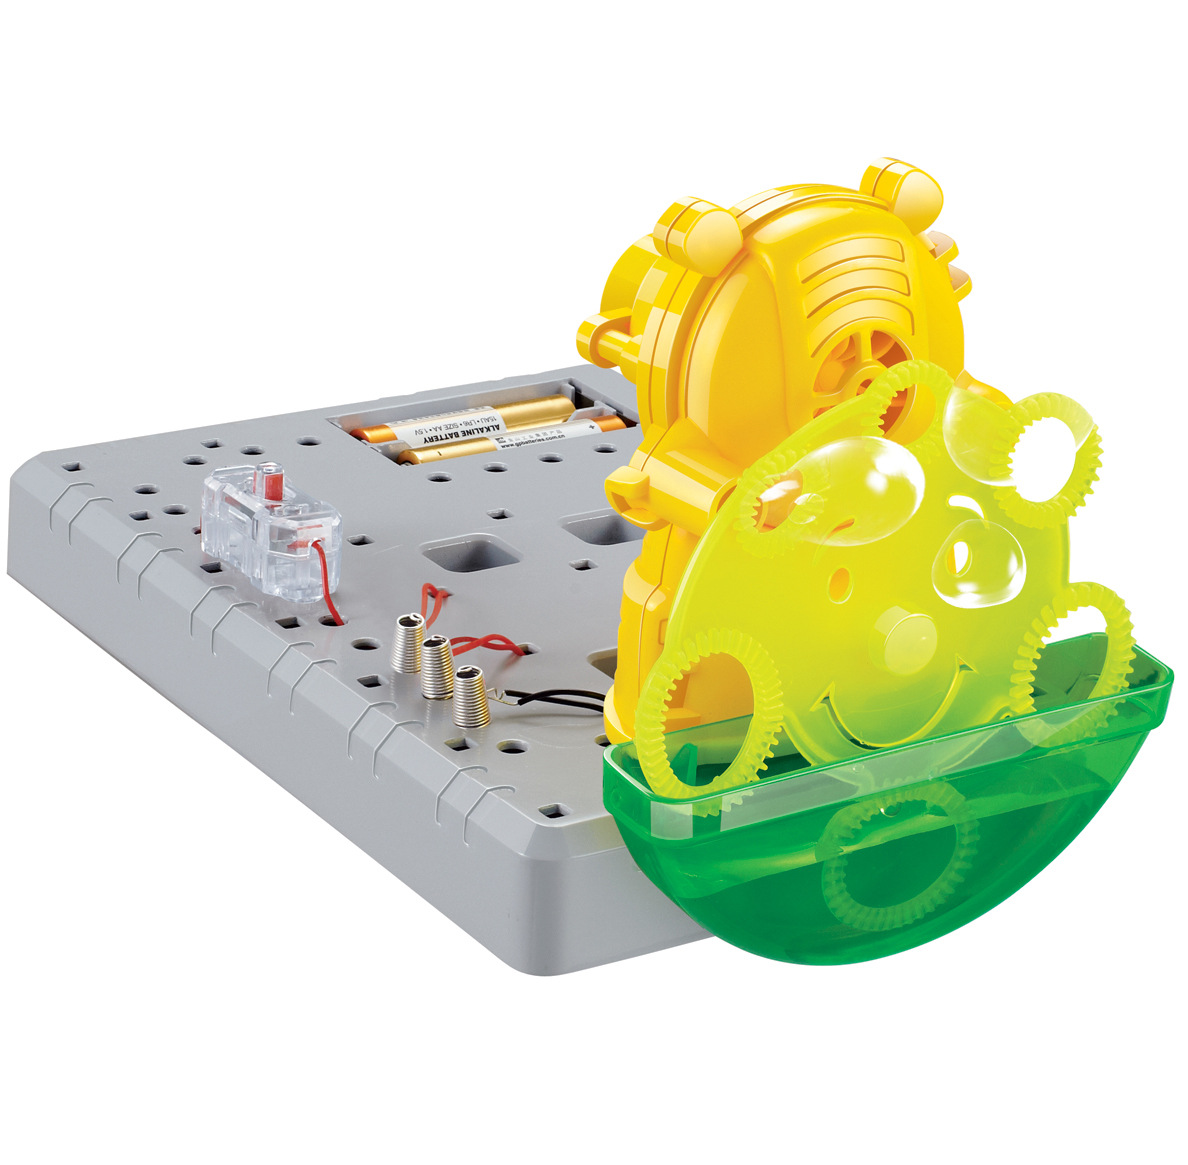 玩具科教 diy自制神奇的浮动球 diy拼装制作 科普器材小制作